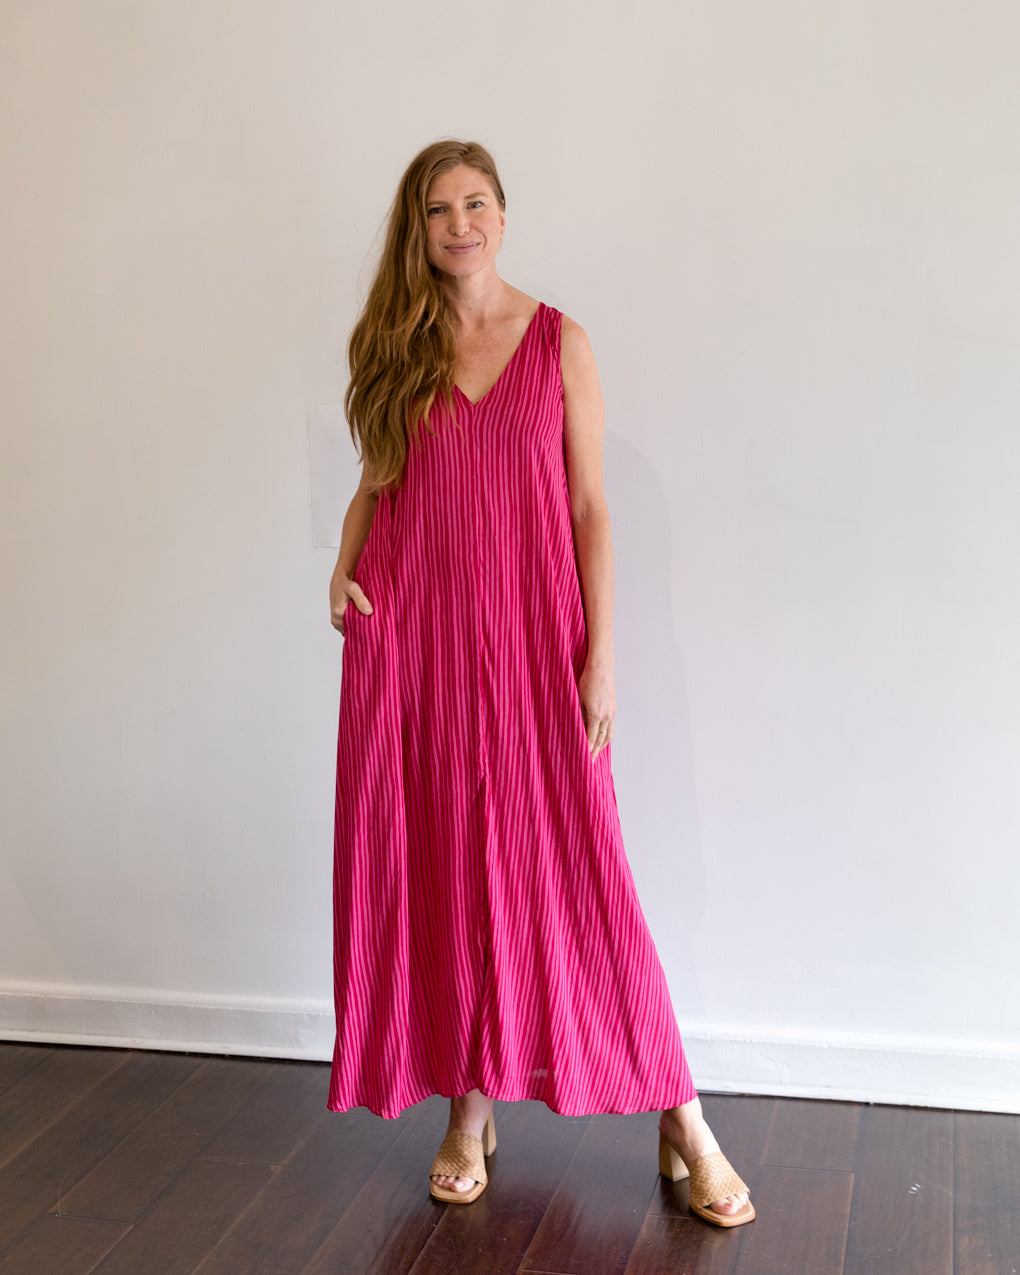 Natalie Martin Tova Maxi Dress in Fuchsia Stripe With Sash